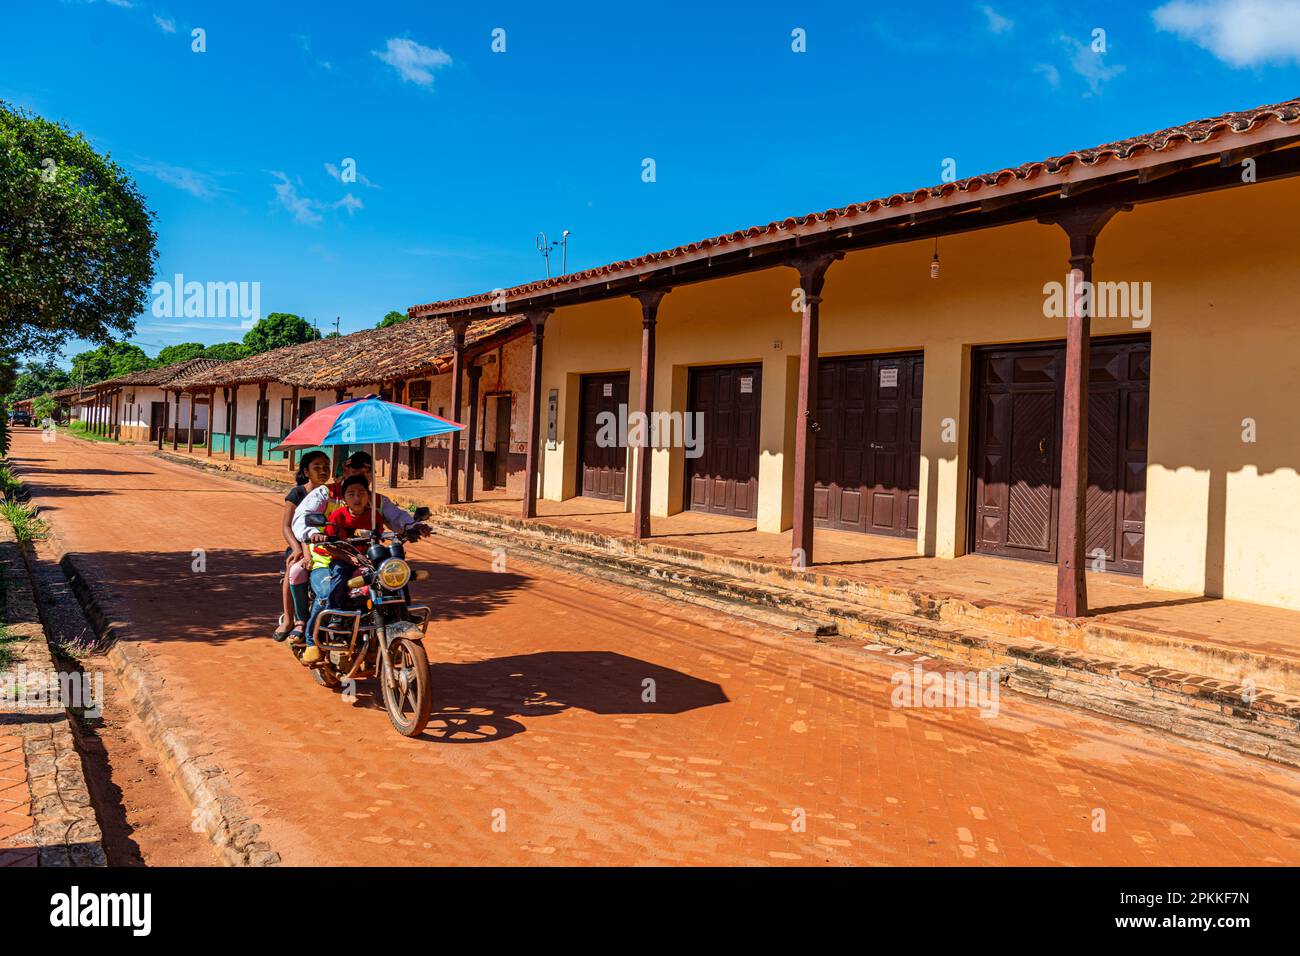 Vieilles maisons coloniales, Mission de Concepcion, missions jésuites de Chiquitos, site du patrimoine mondial de l'UNESCO, département de Santa Cruz, Bolivie, Amérique du Sud Banque D'Images